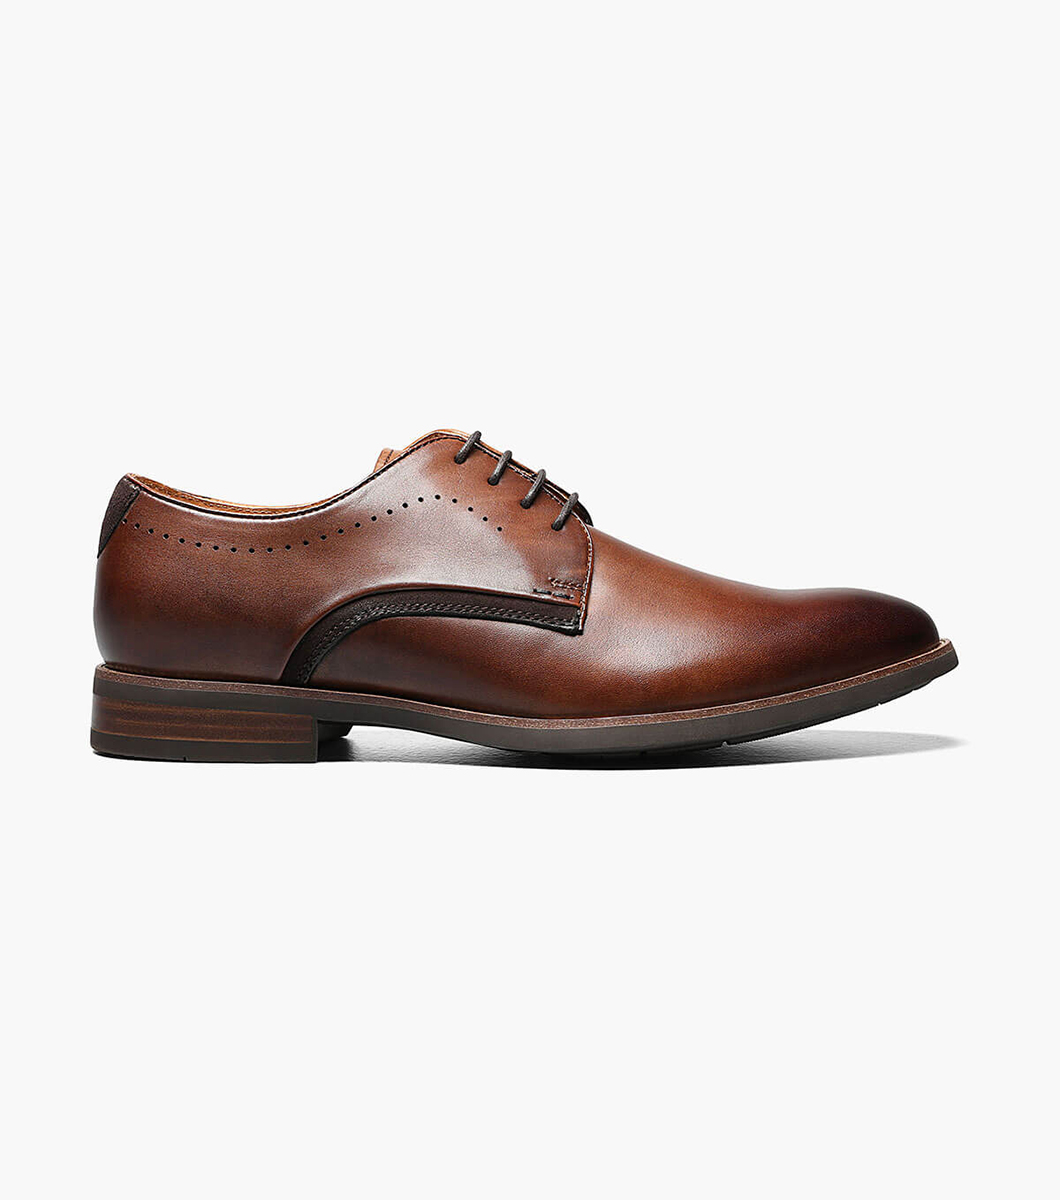 Men’s Dress Shoes | Cognac Plain Toe Oxford | Florsheim Uptown